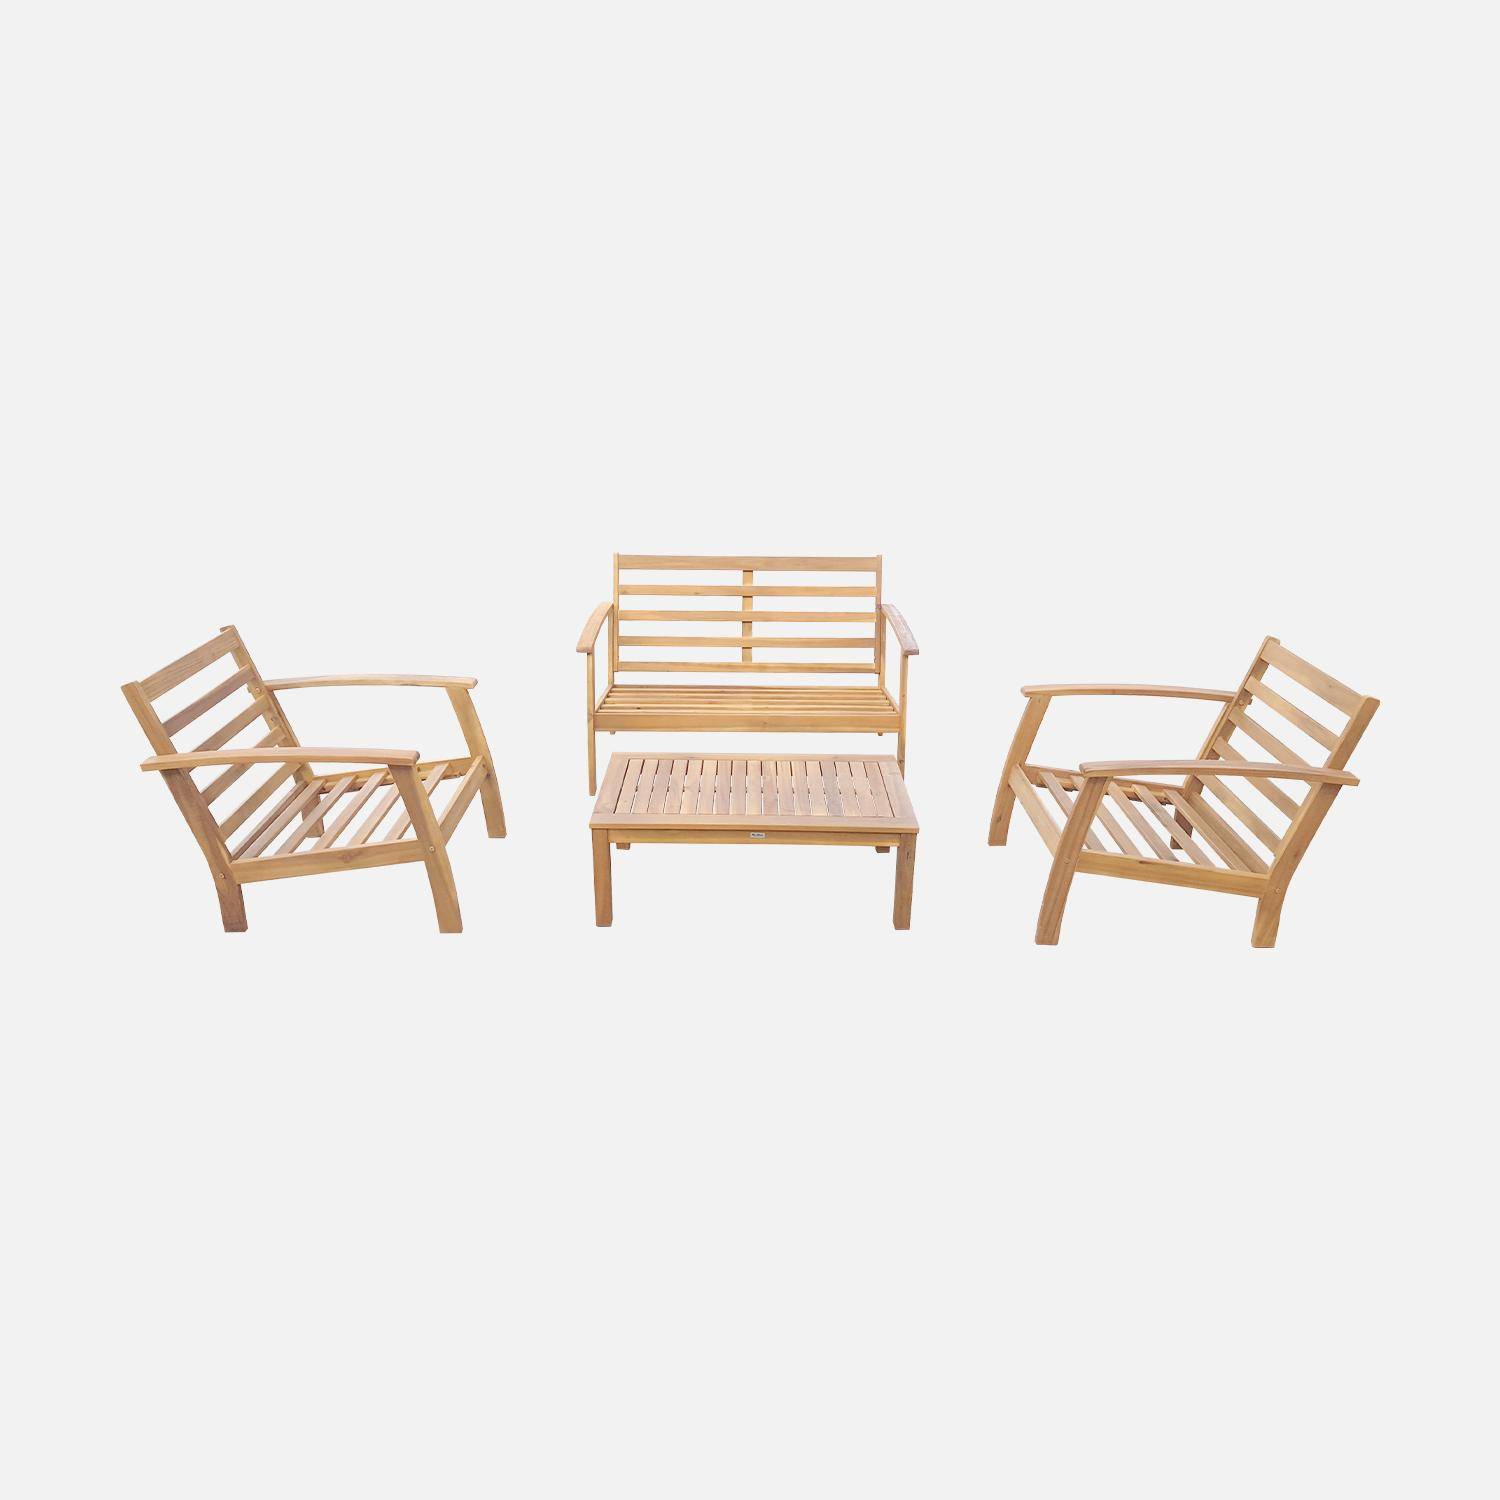 Salon de jardin en bois 4 places - Ushuaïa - Coussins terracotta, canapé, fauteuils et table basse en acacia, design Photo5